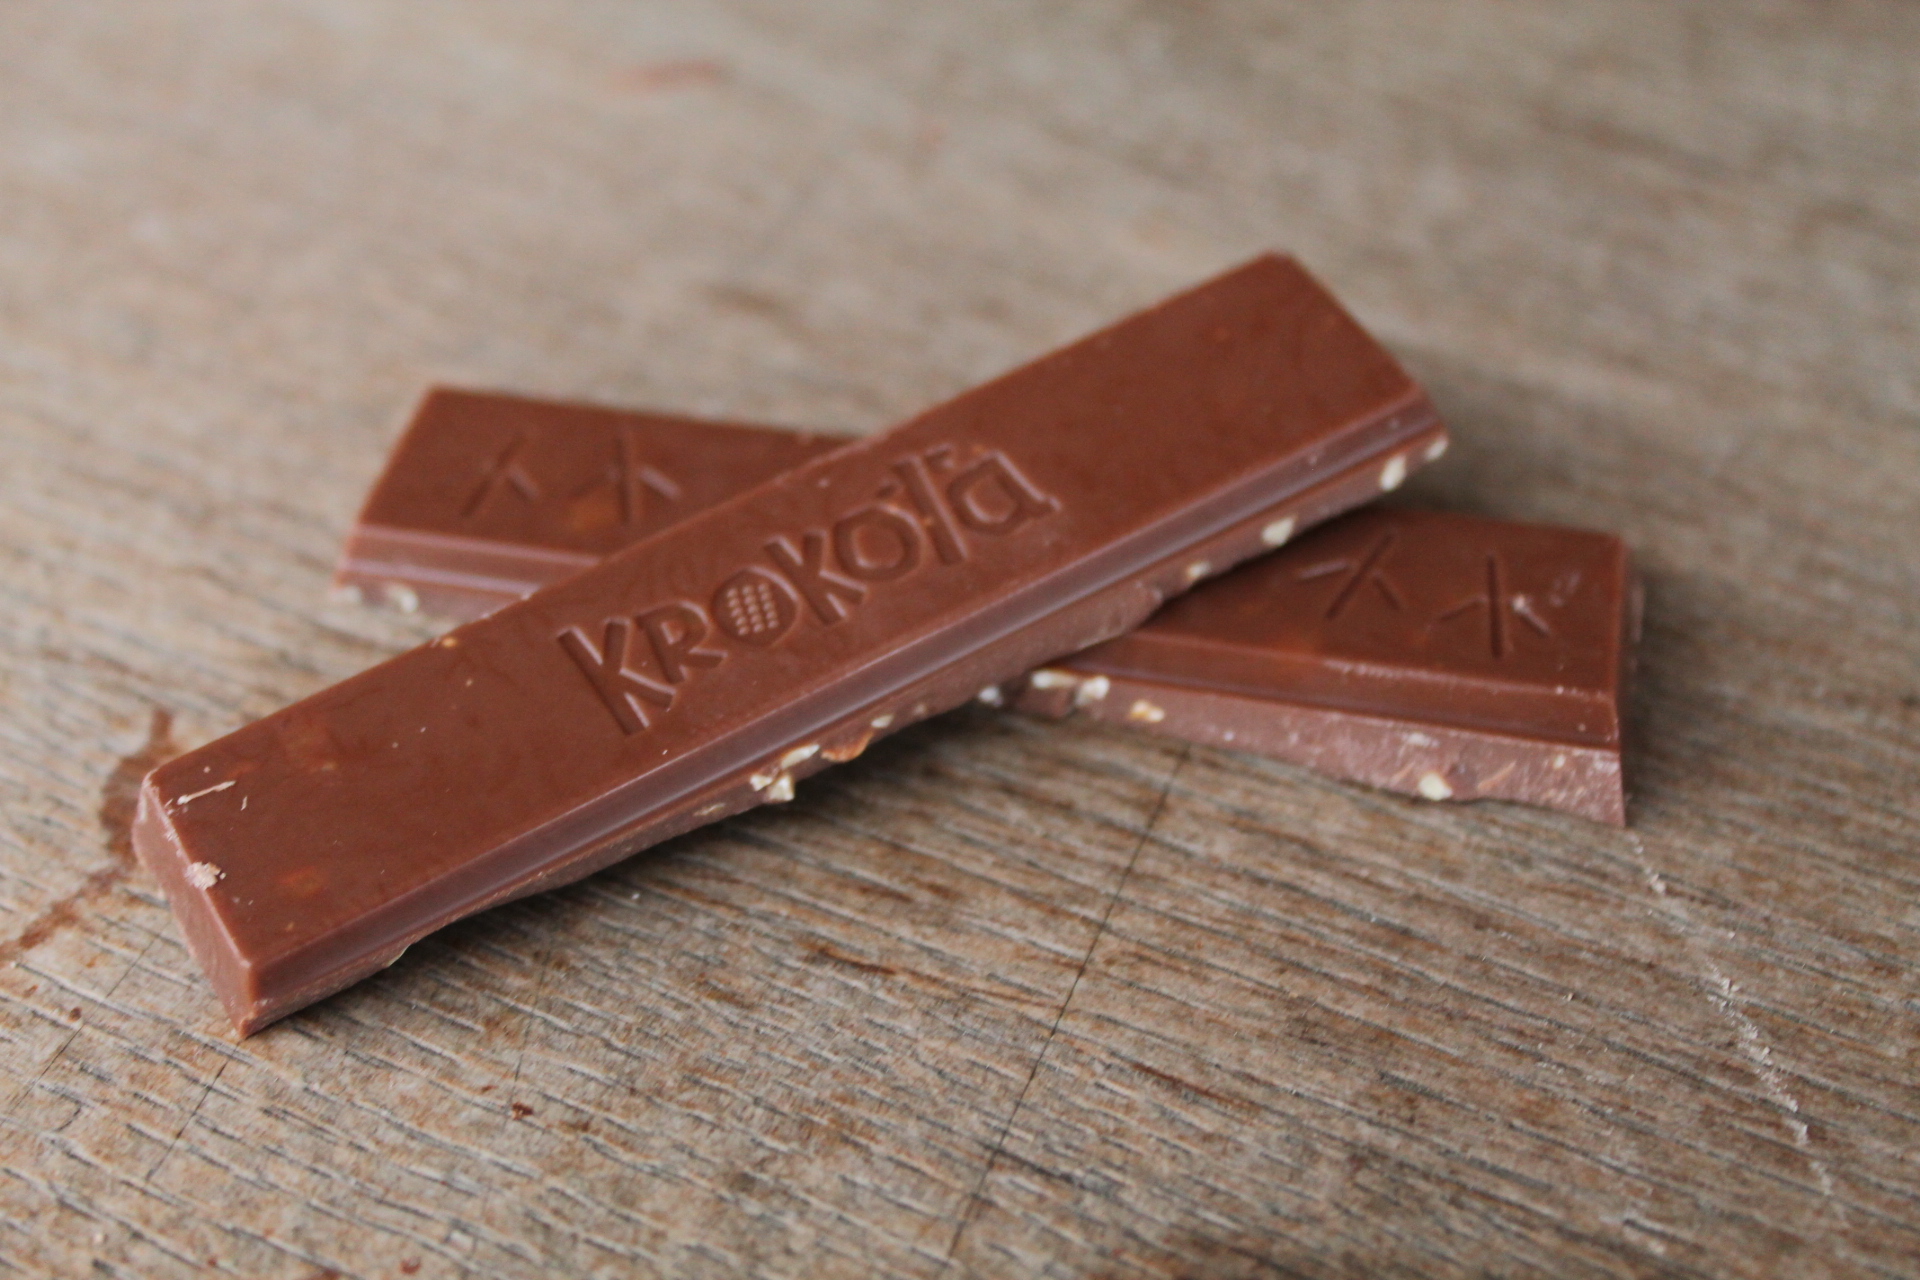 KROKOLA – Lait 41%, amandes et caramel détails 